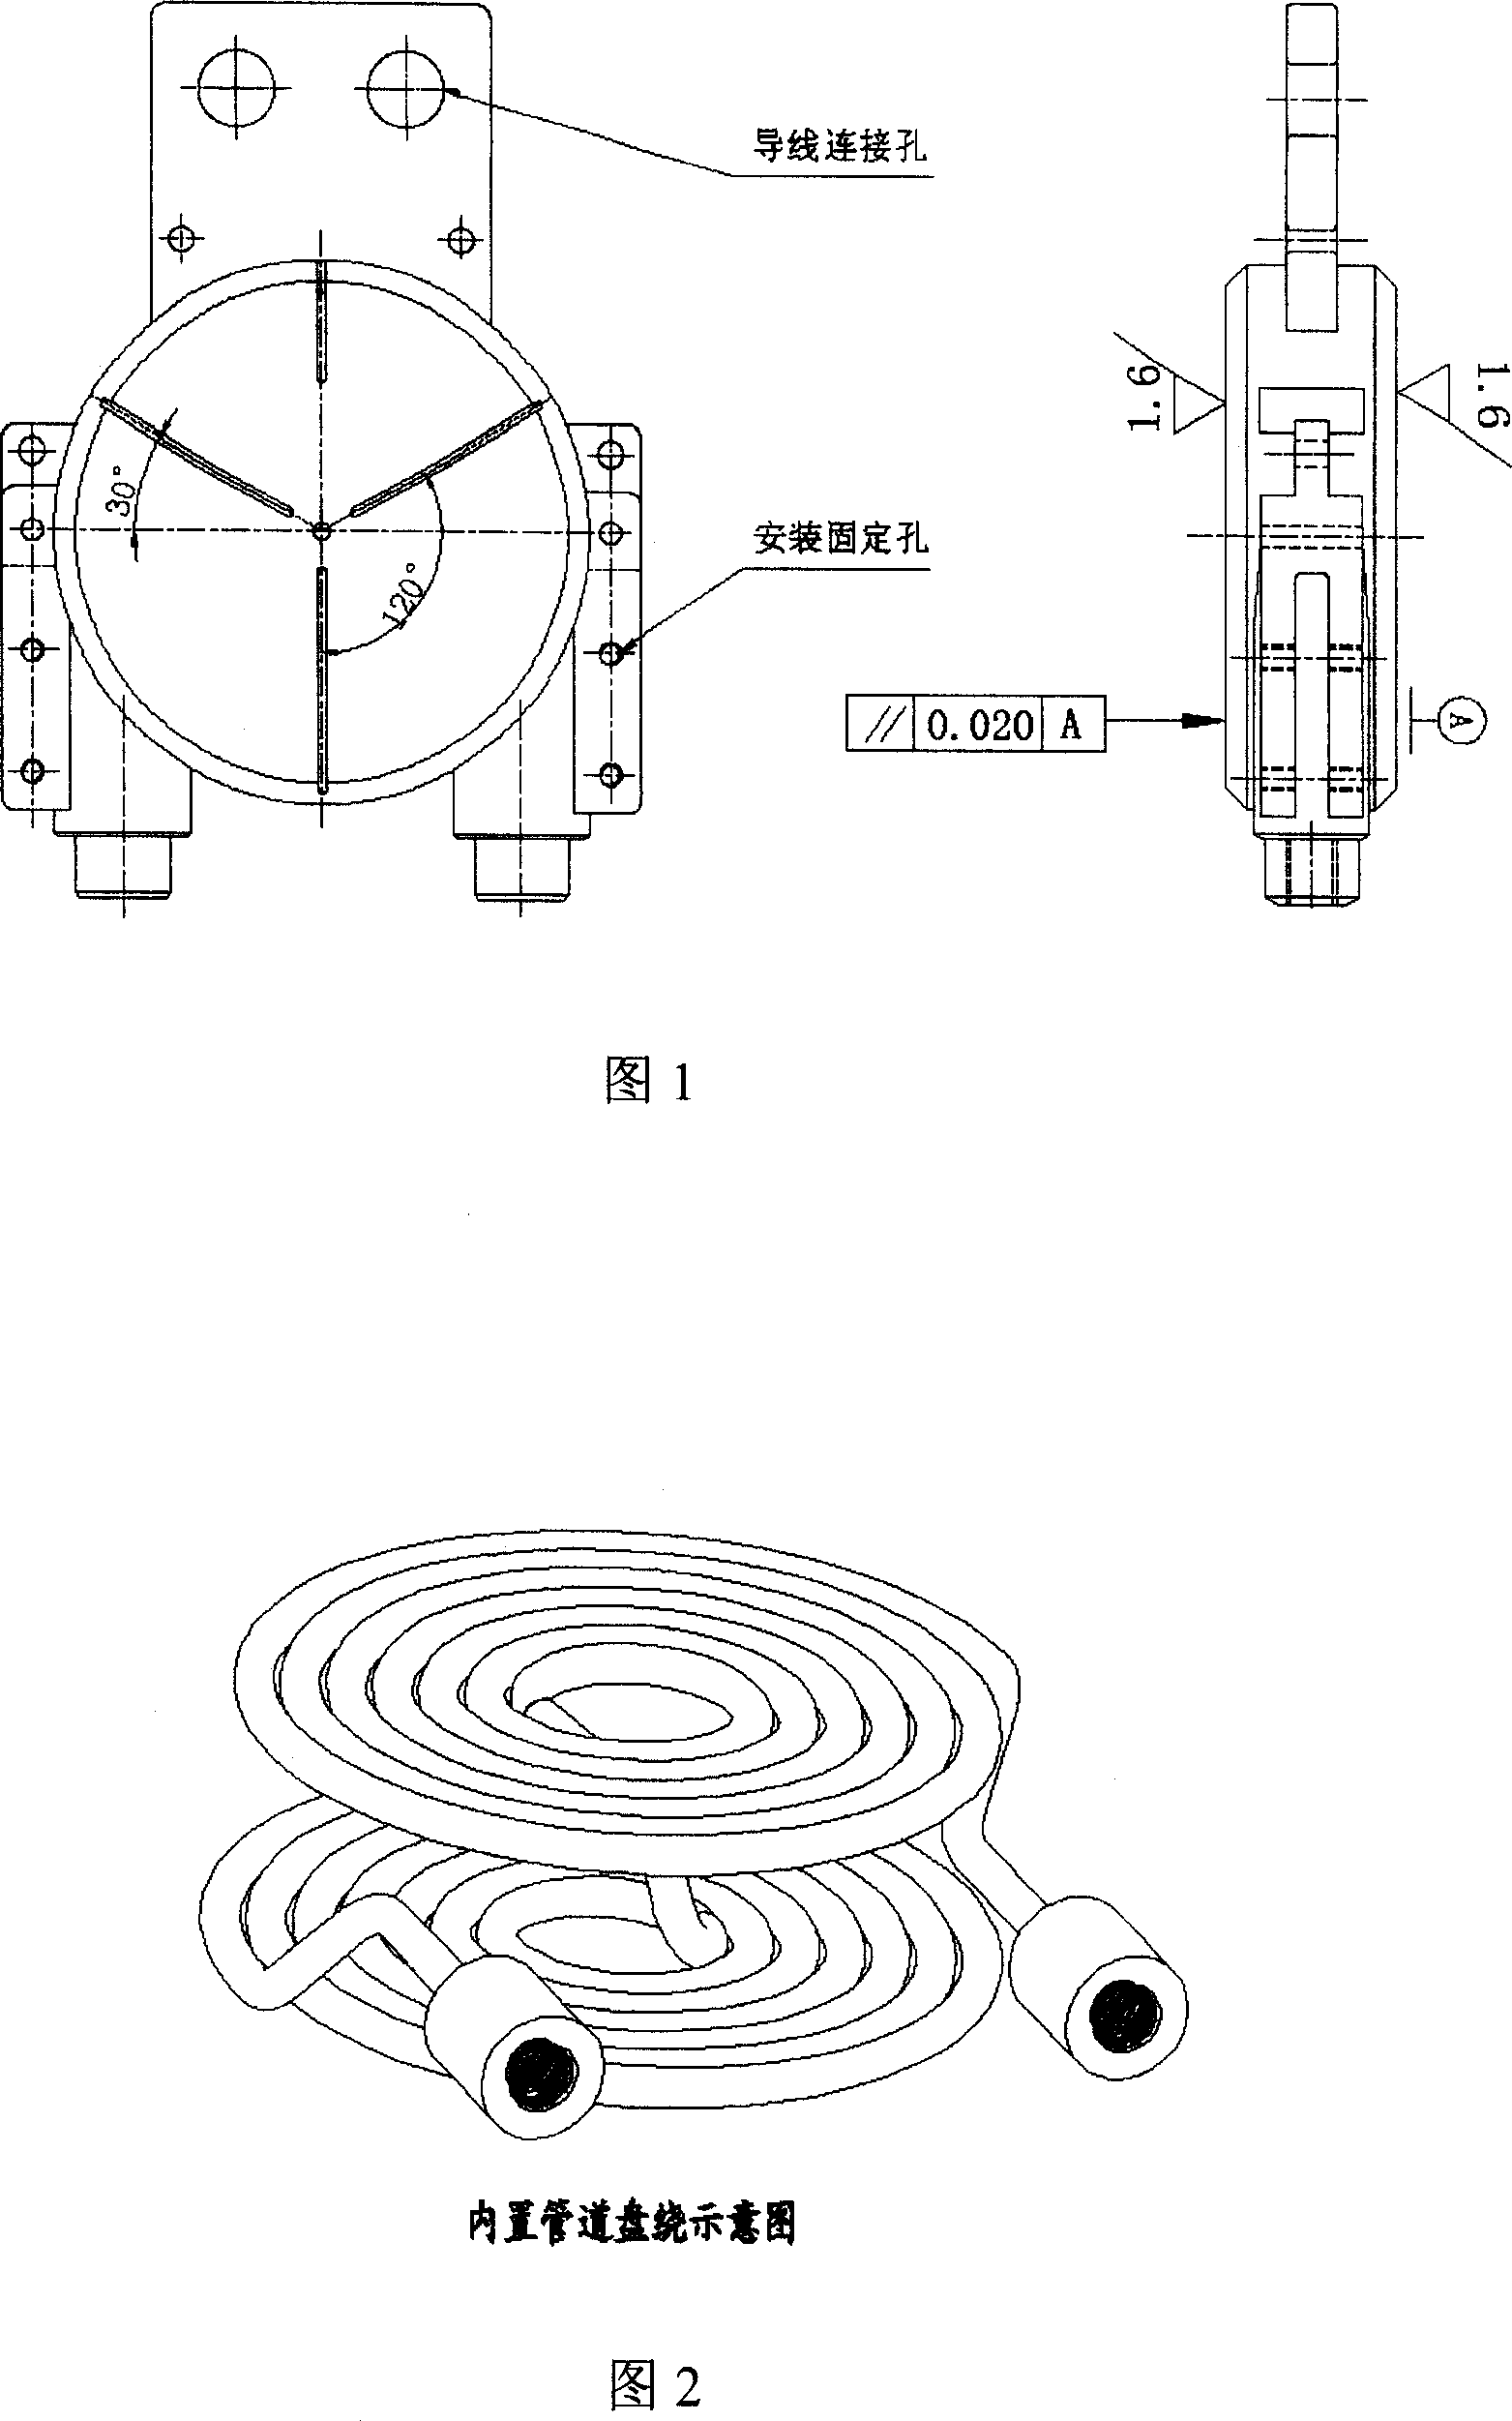 Thyratron transistor valve water-cooling radiator